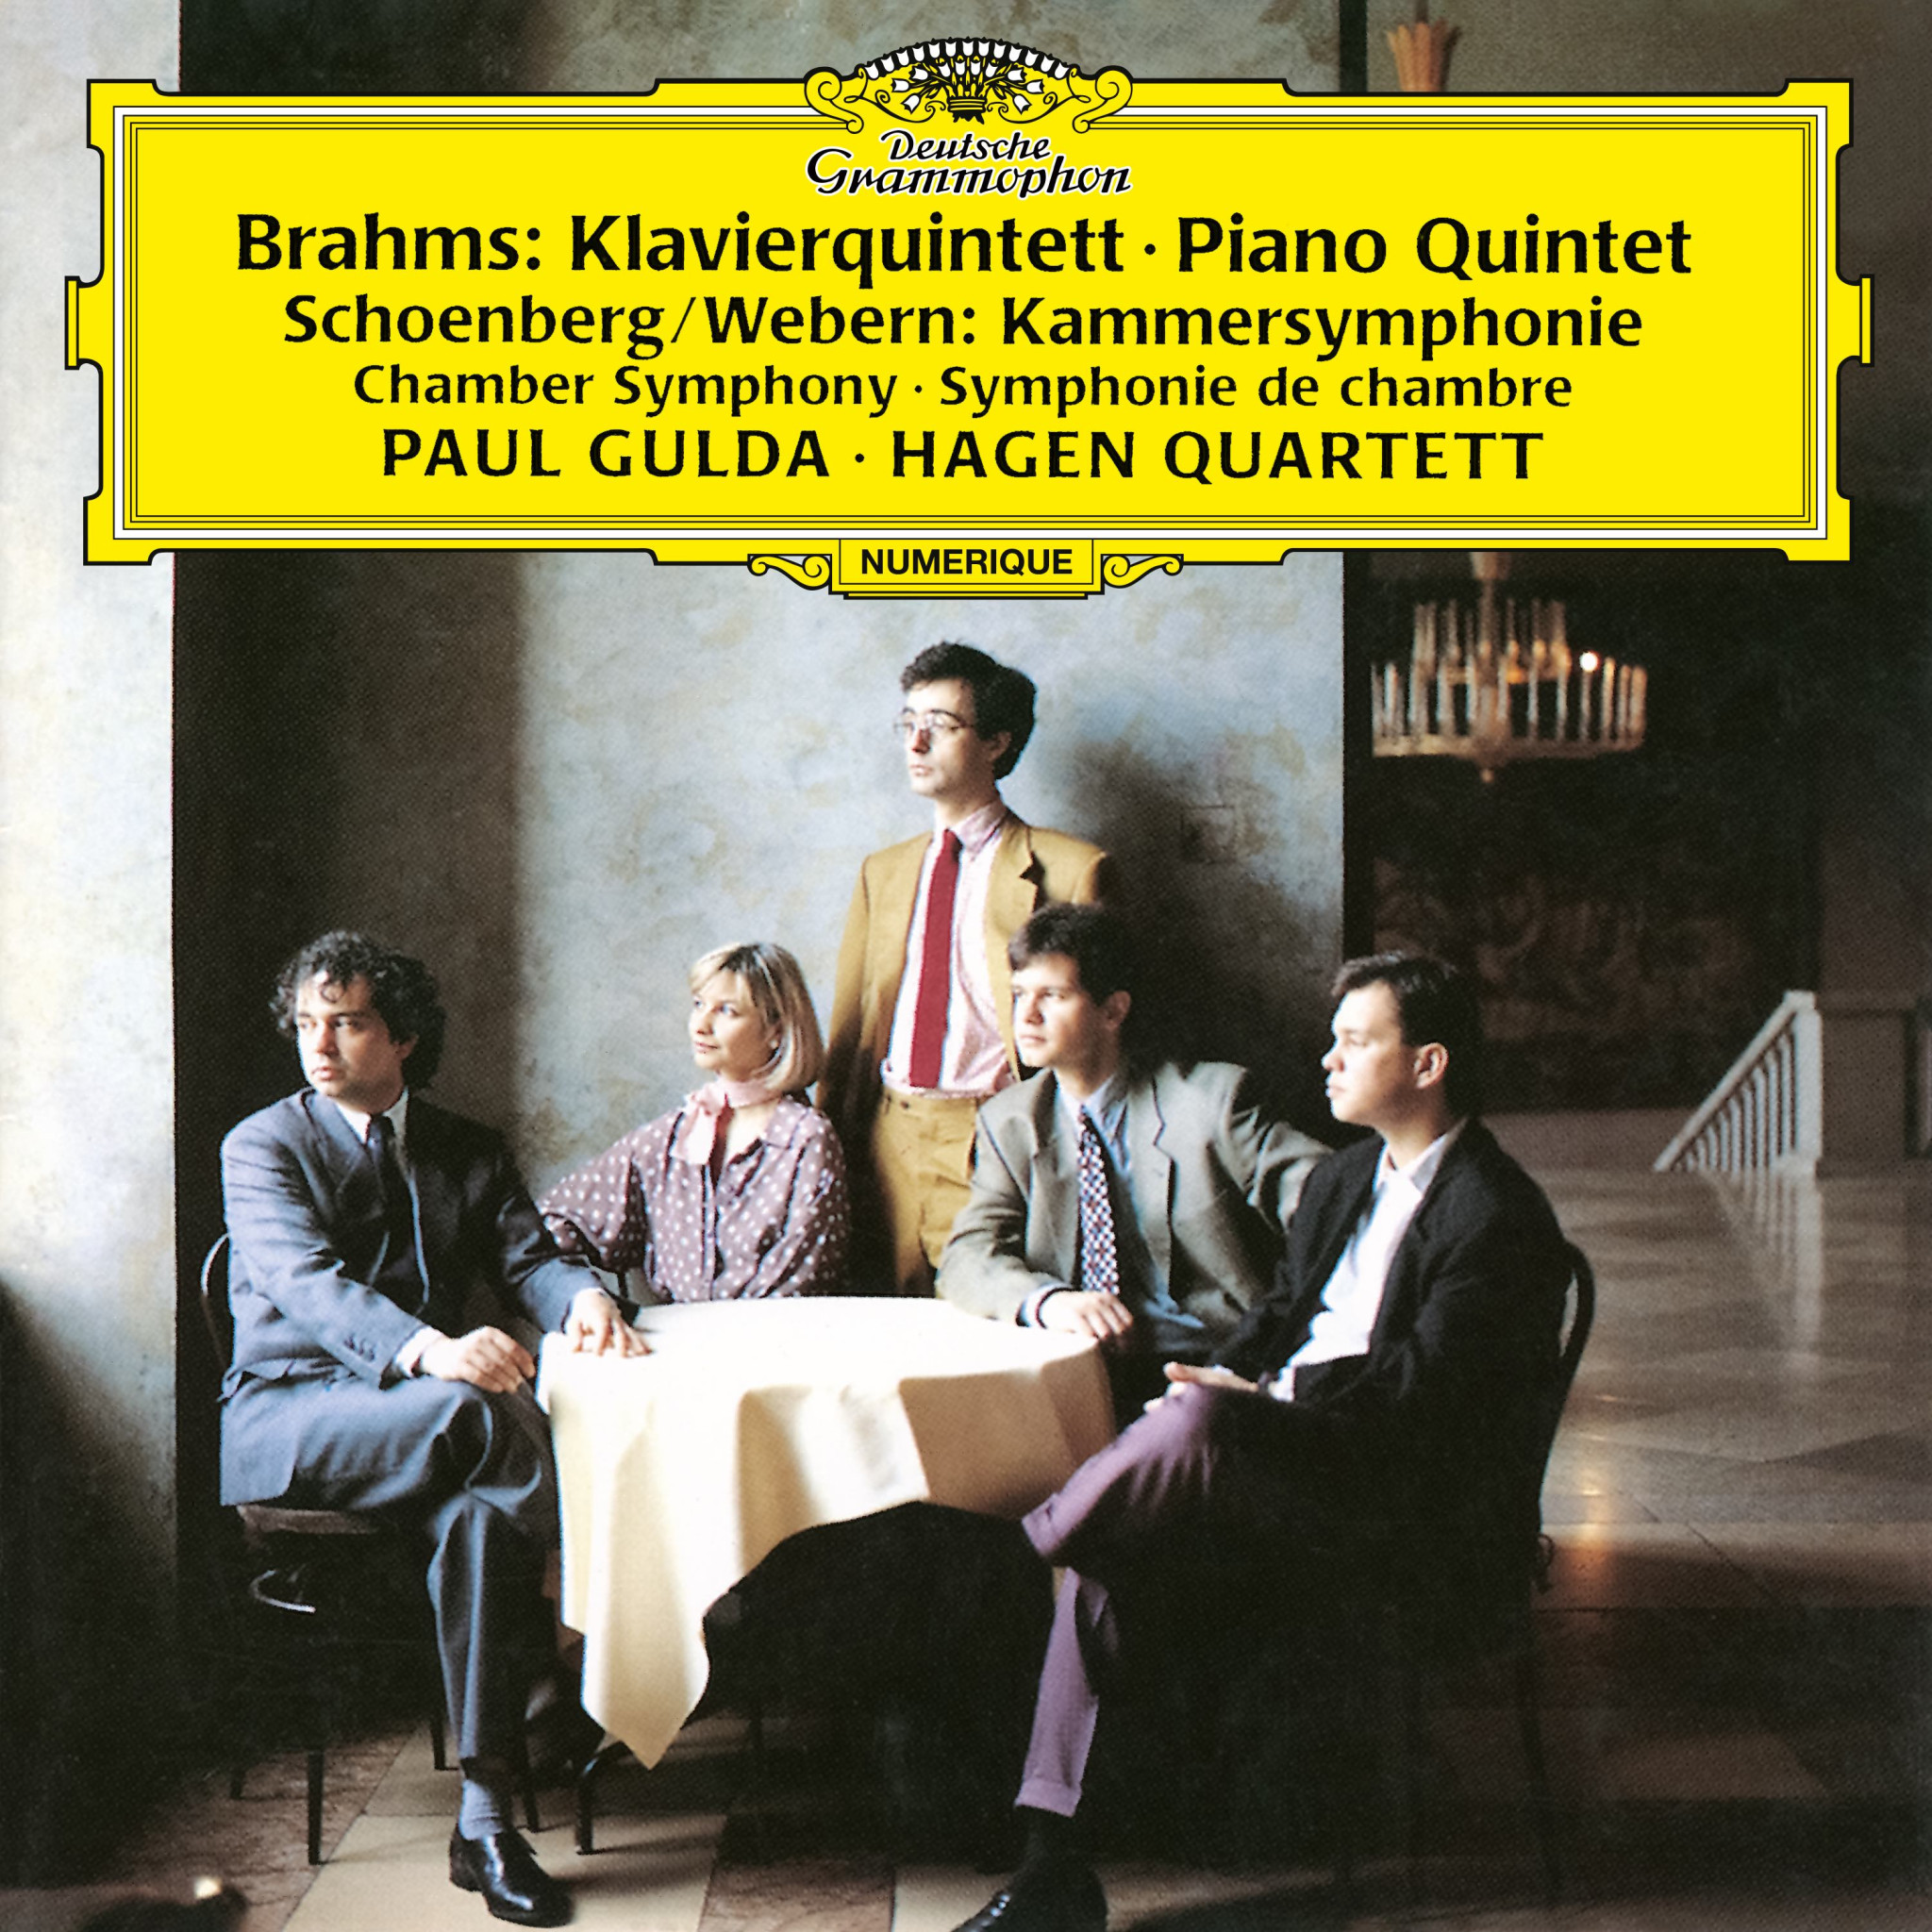 Paul Gulda, Hagen Quartett - Brahms, Schoenberg